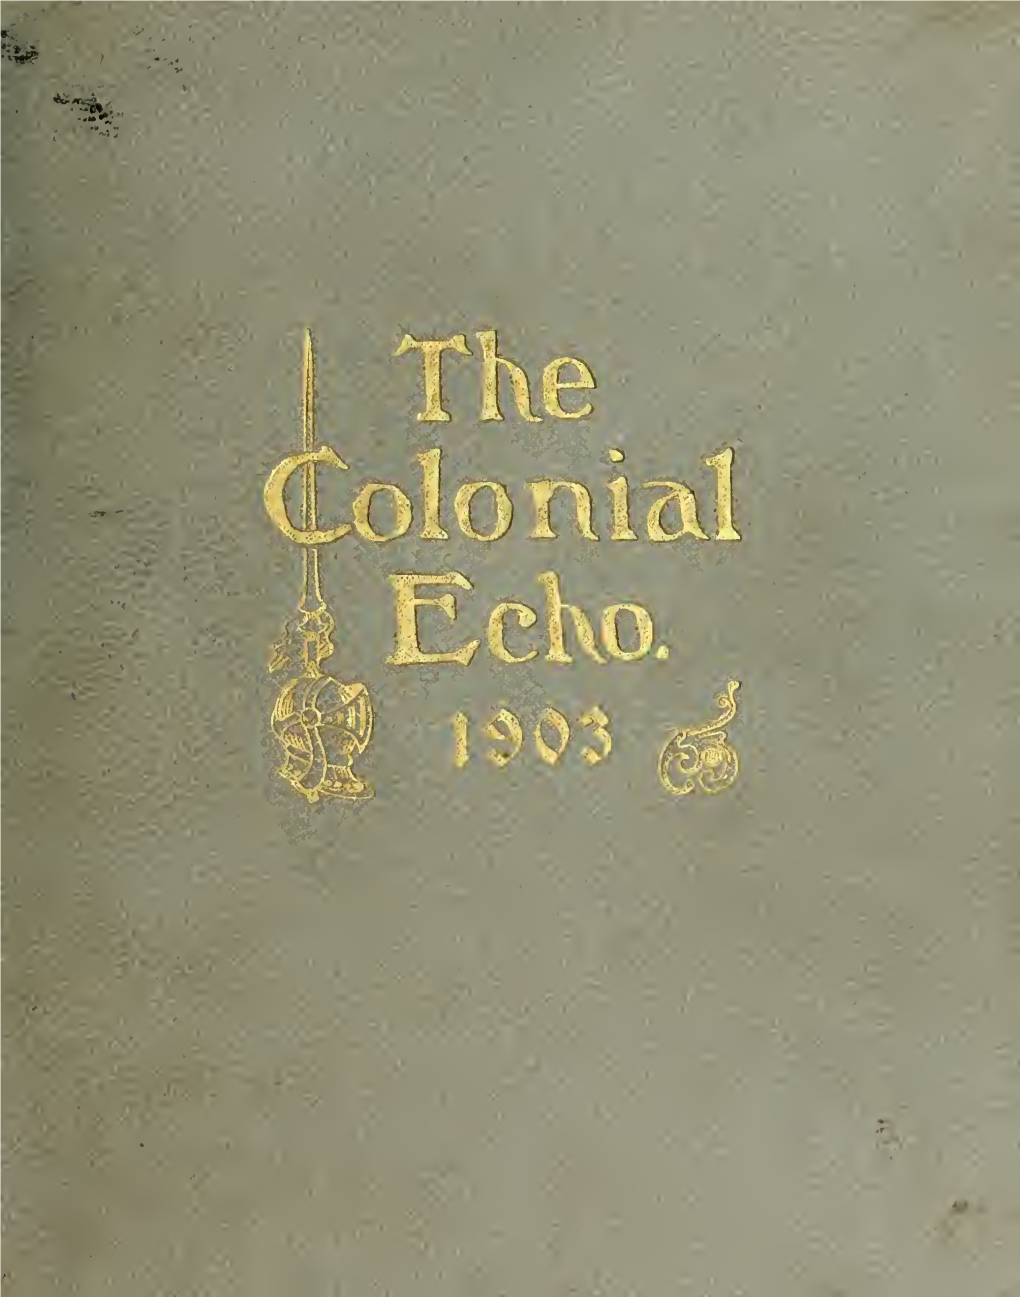 Colonial Echo, 1903